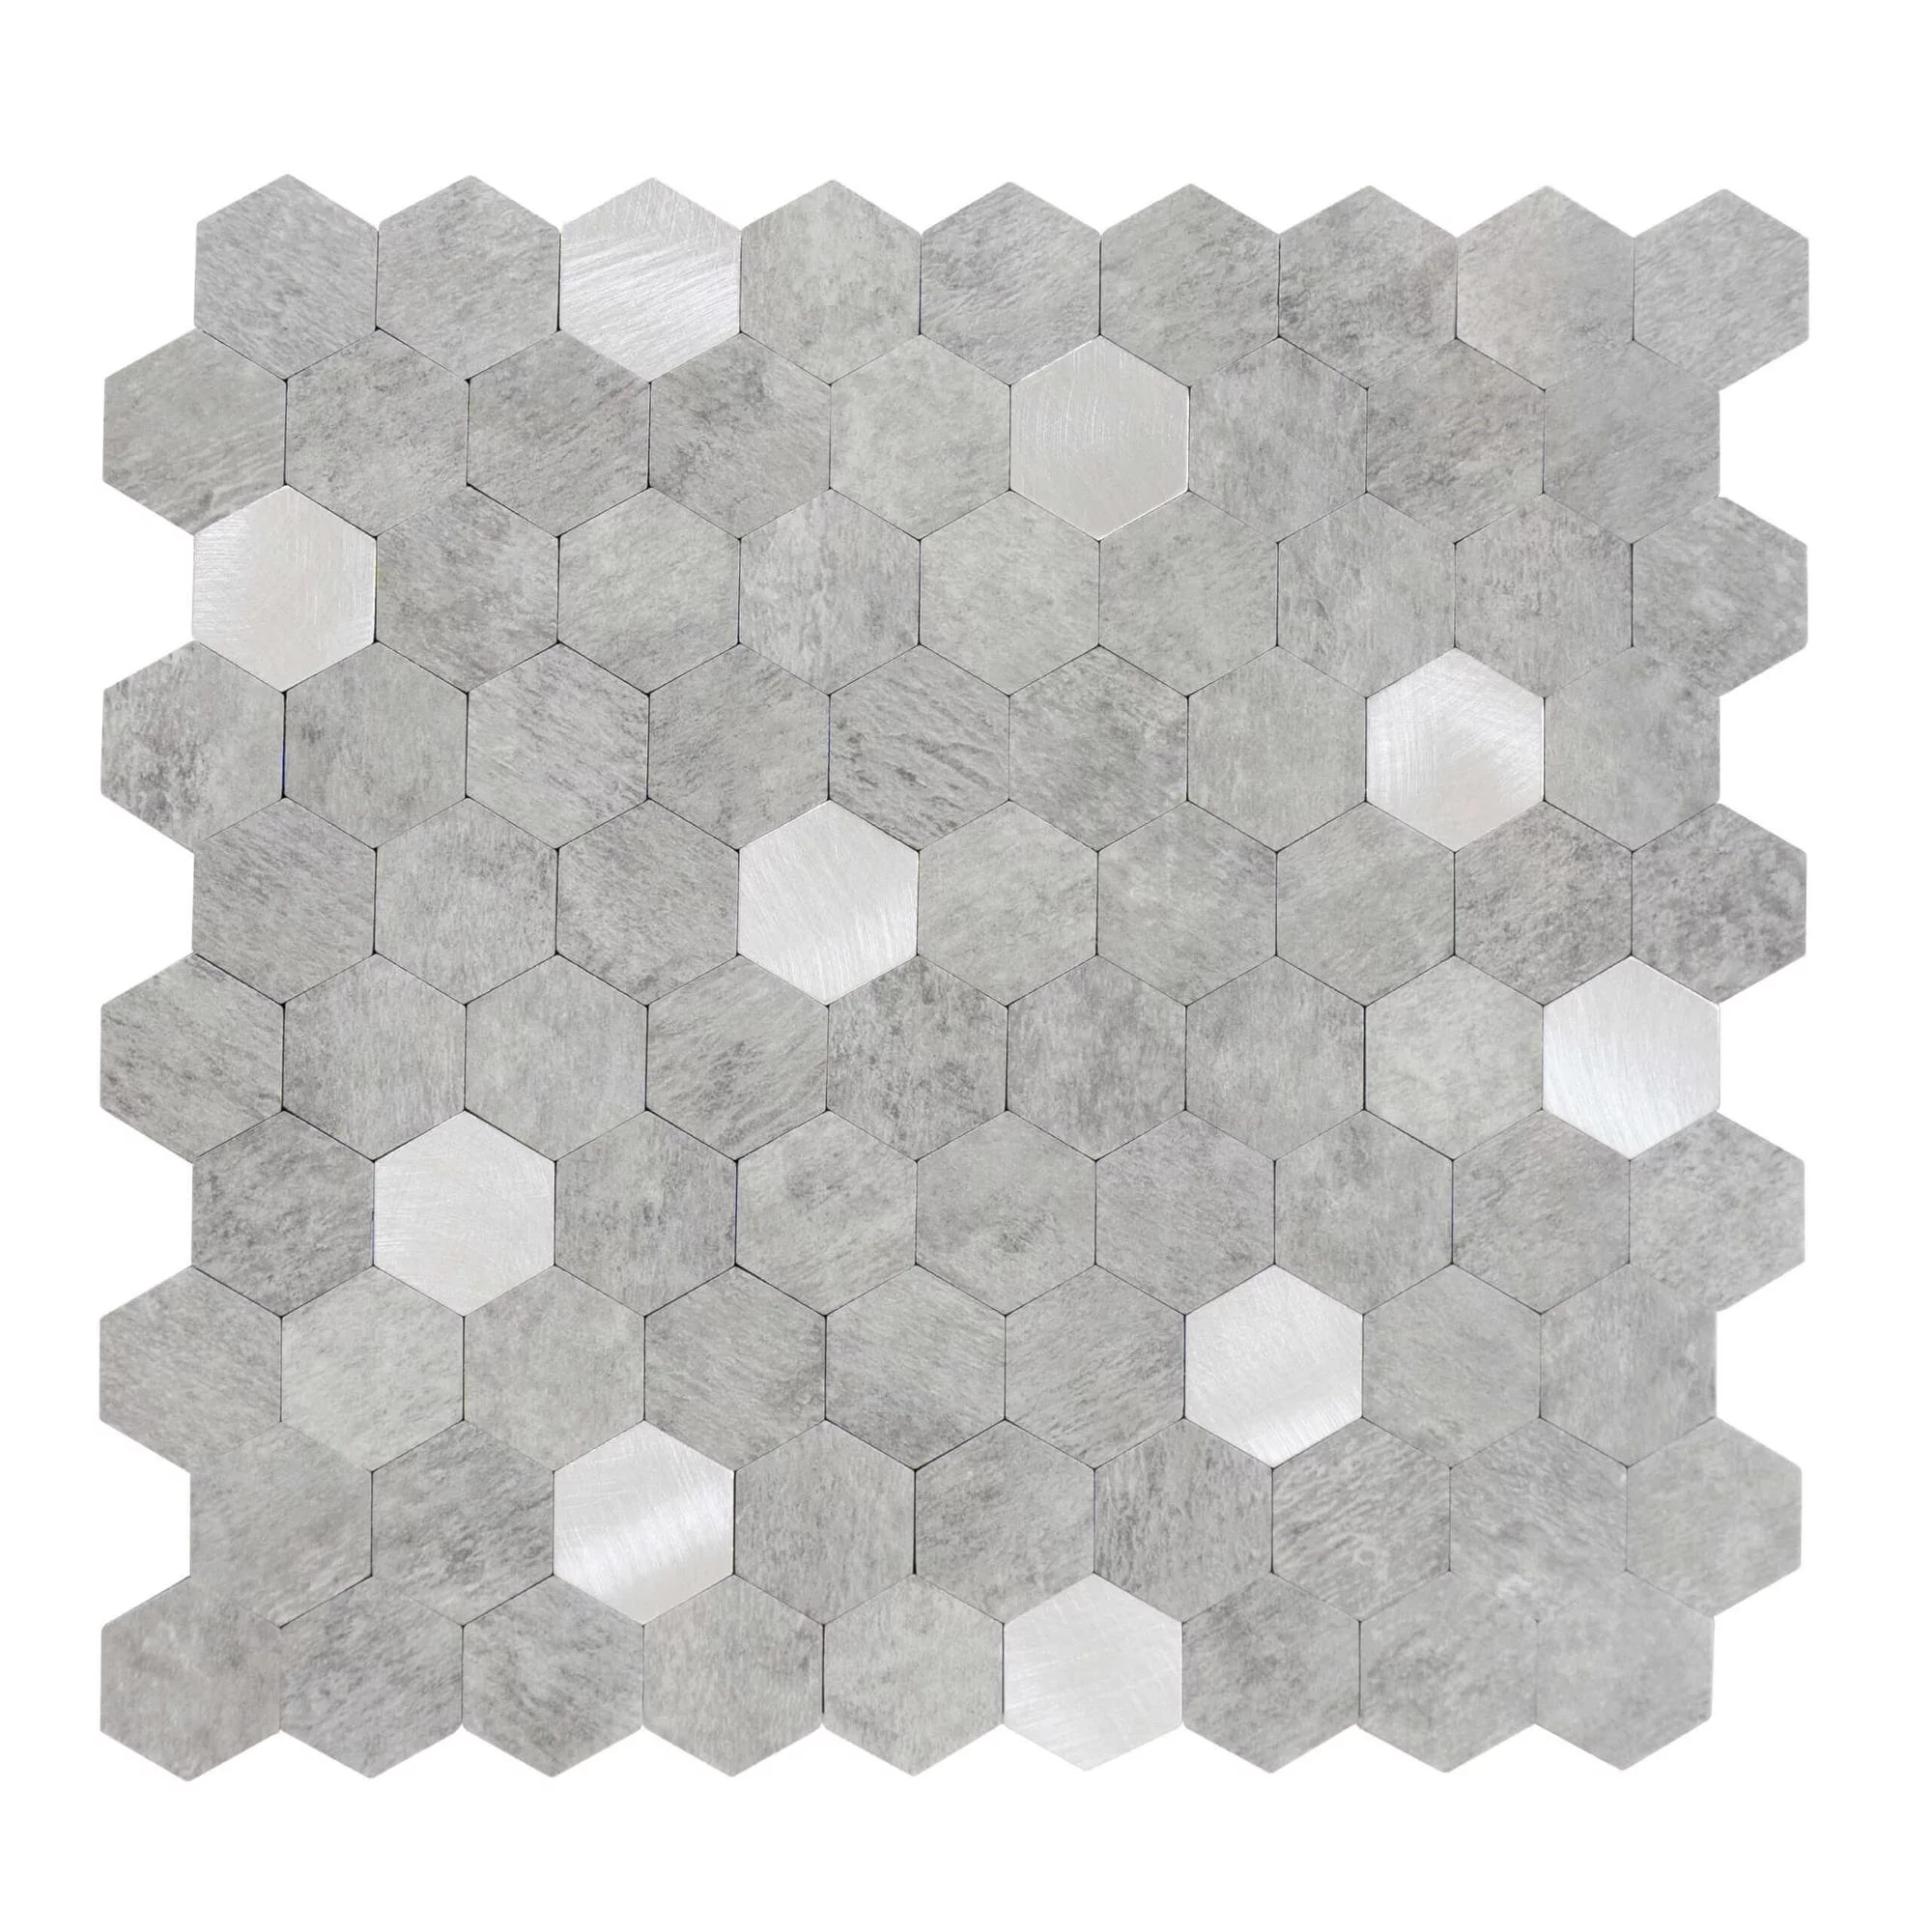 carreaux-autocollants-forme-hexagonale-0.88m².-11-pcs-aspect-pierre-gris-clair-argent